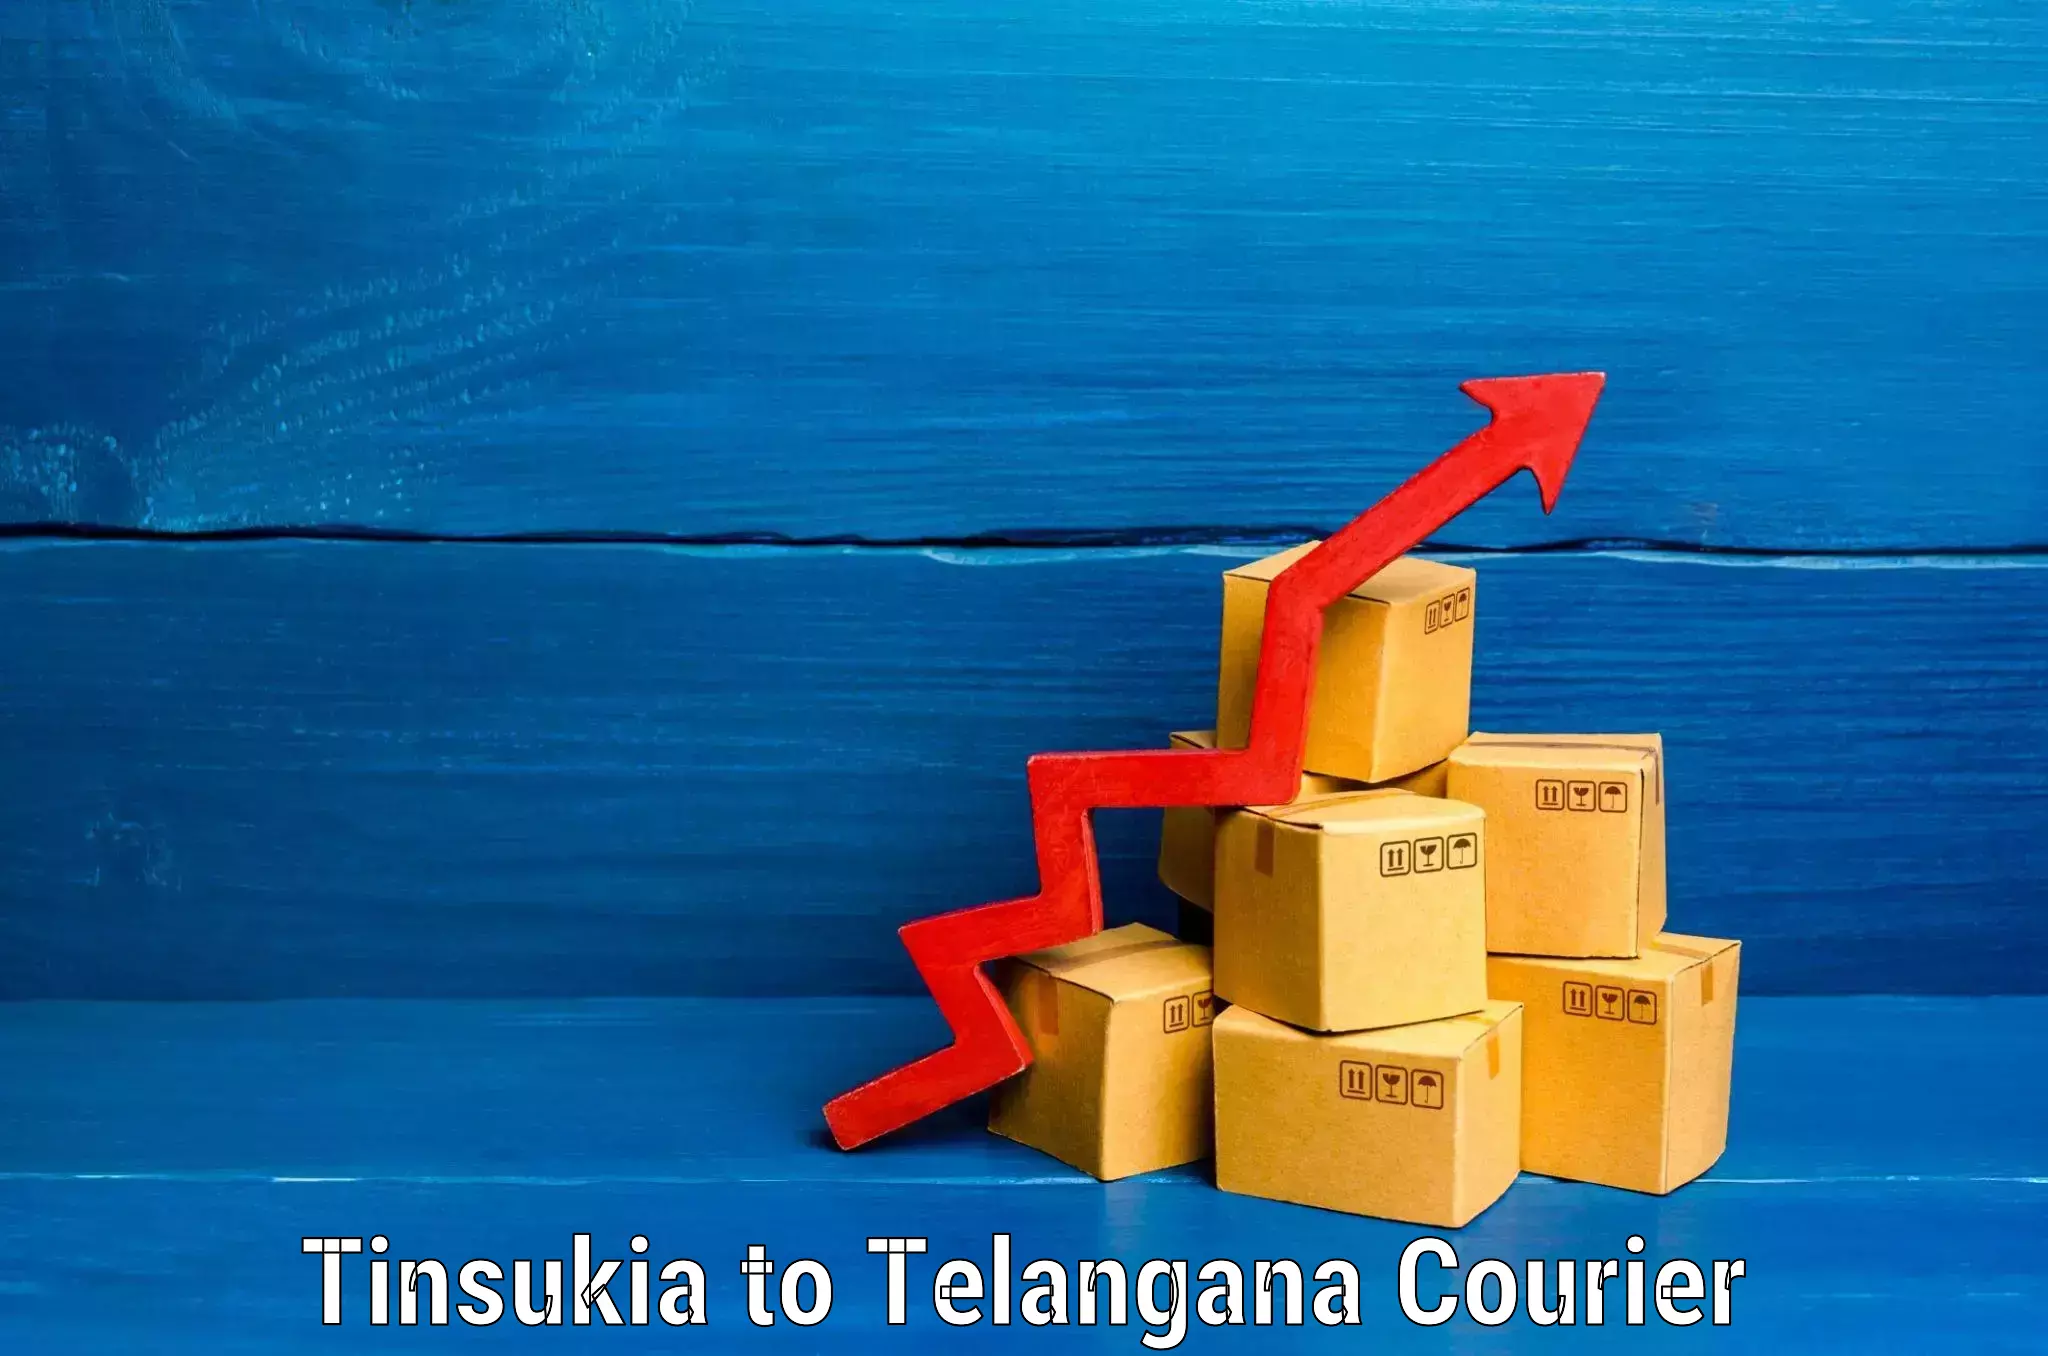 Luggage shipping estimate Tinsukia to Ghatkesar